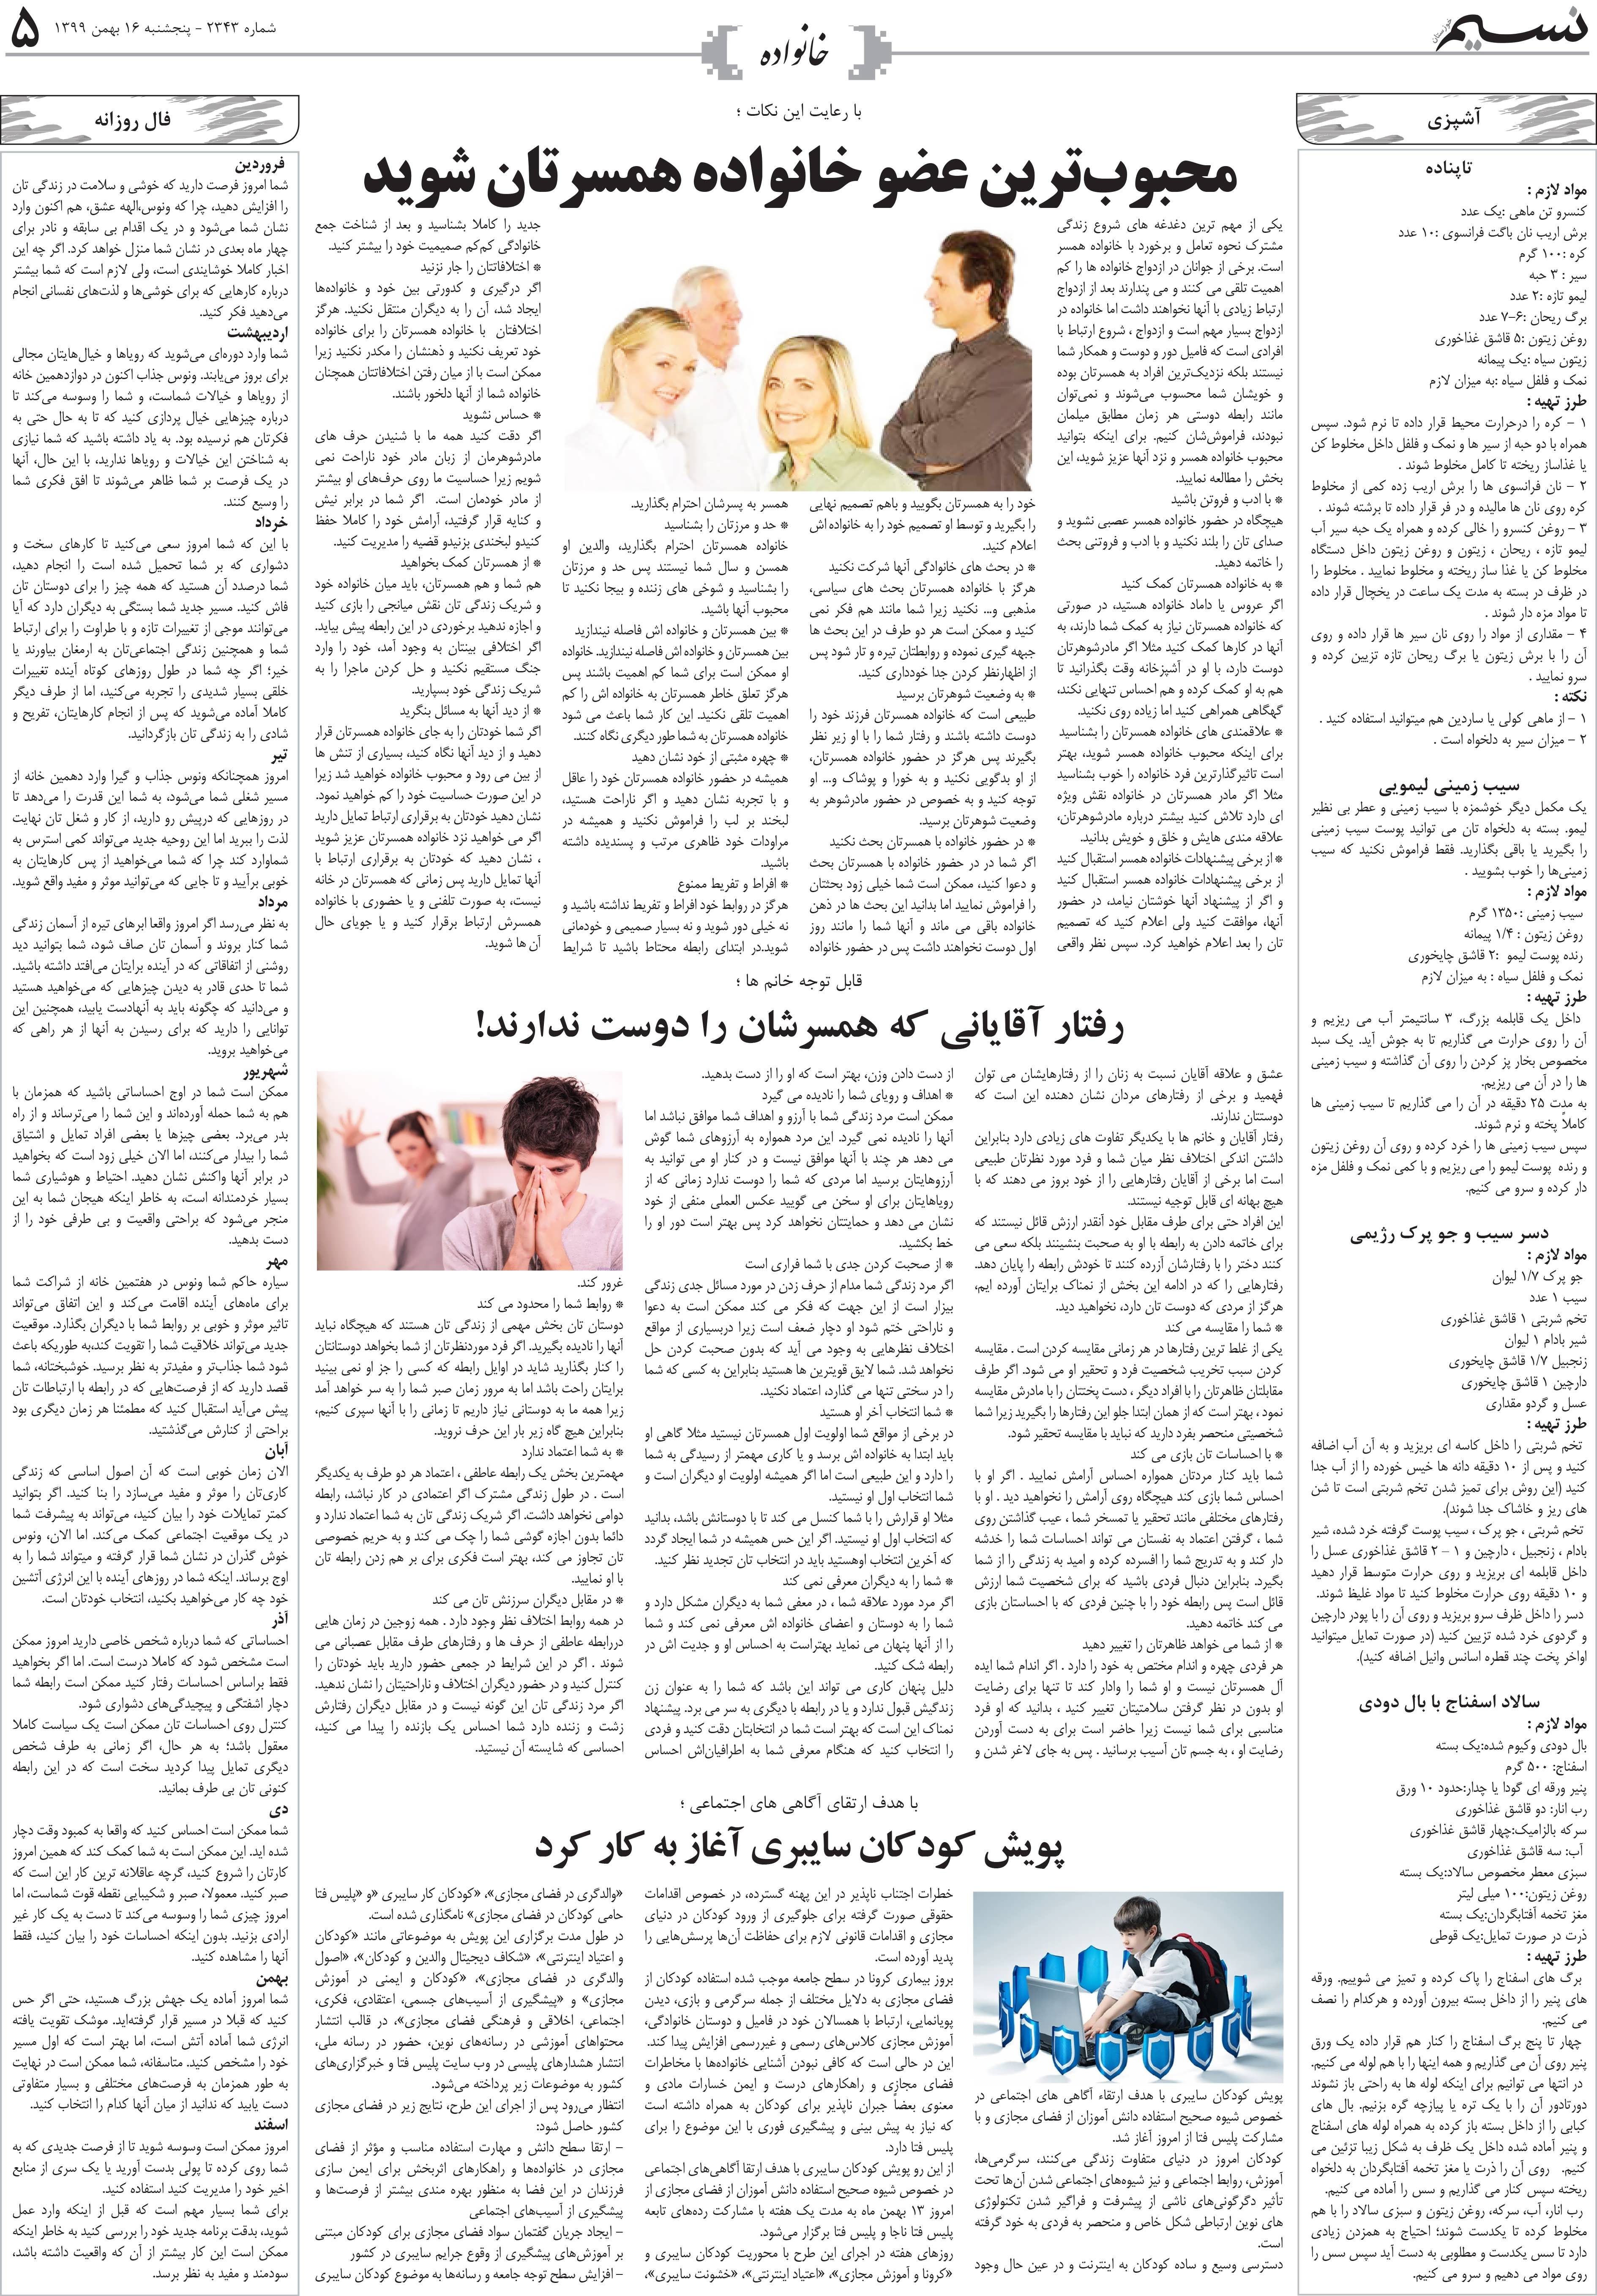 صفحه خانواده روزنامه نسیم شماره 2343